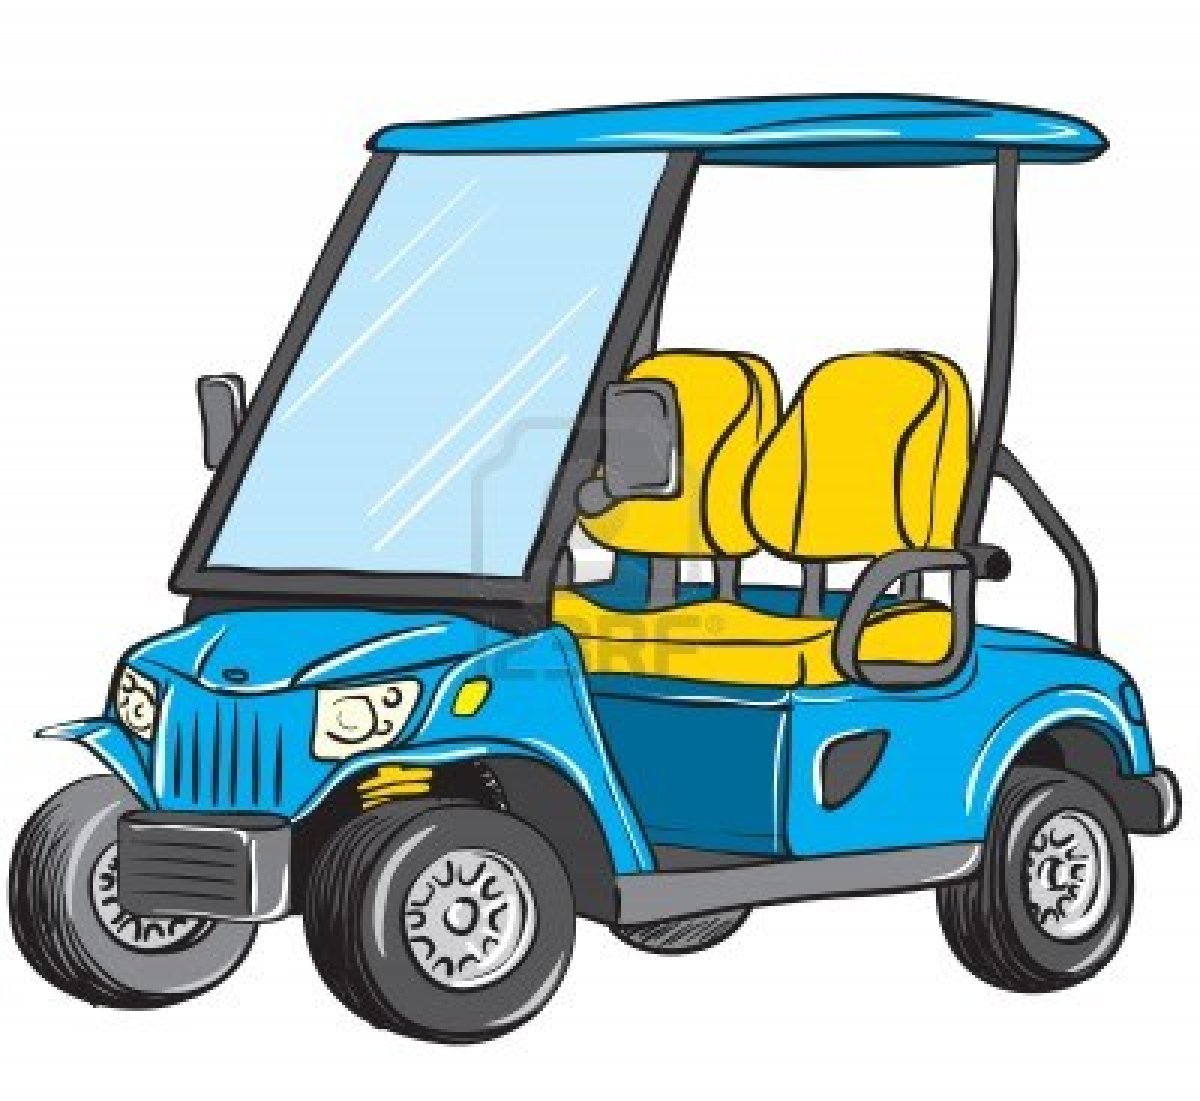 Golf Cart Clipart - Clipart .